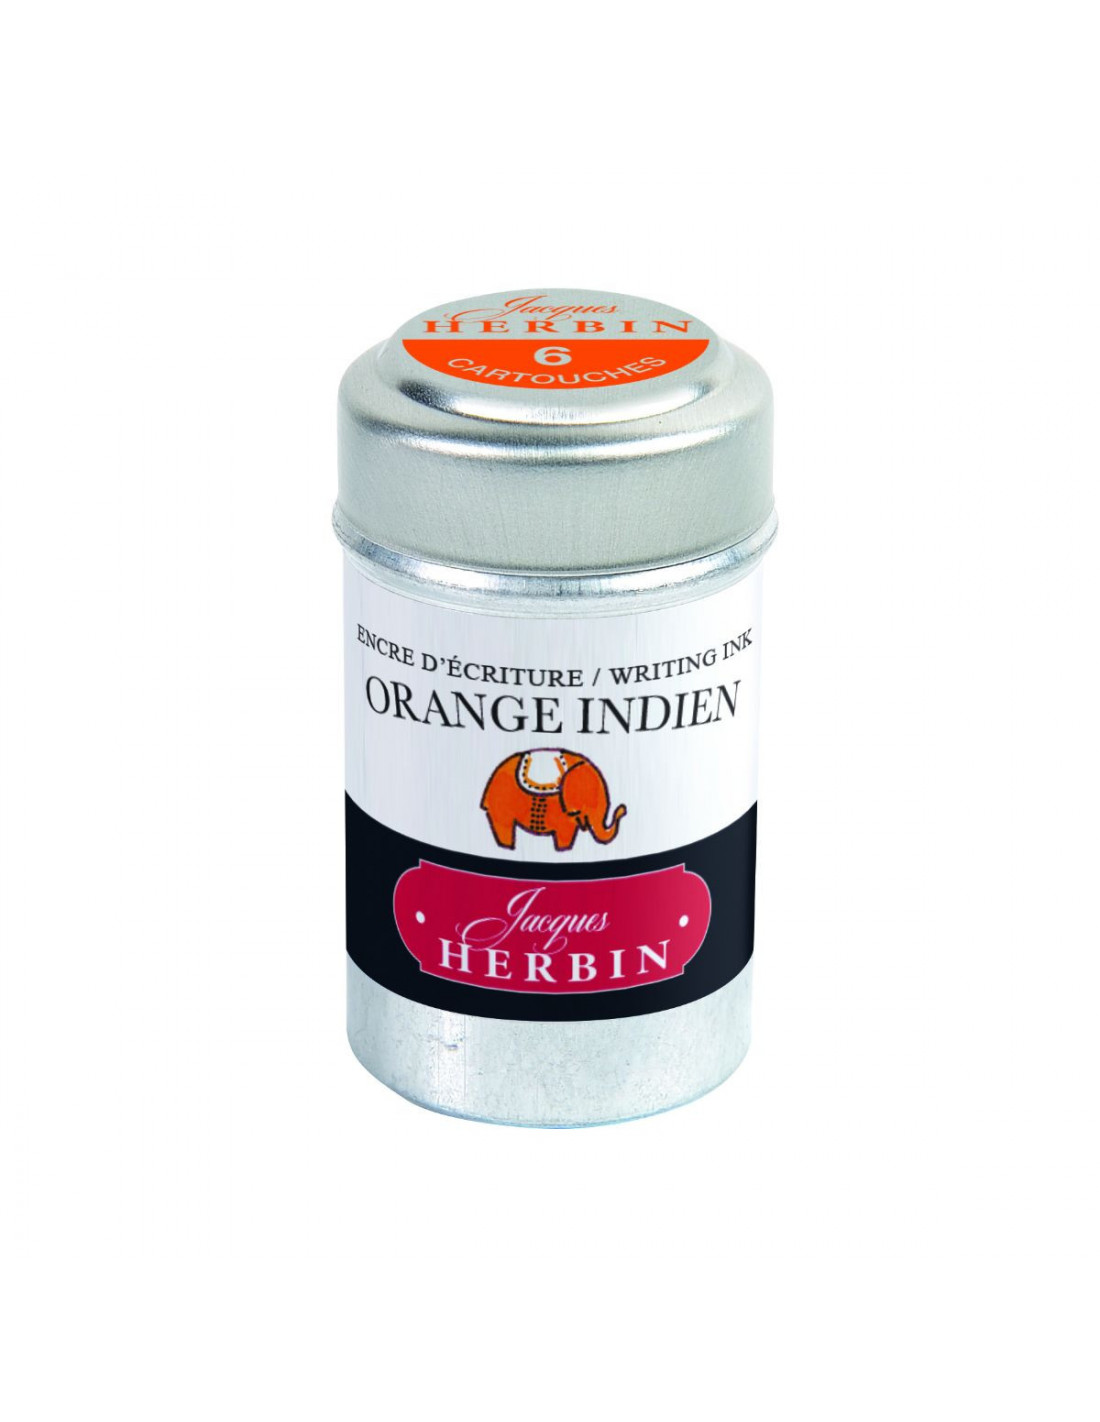 Jacques Herbin Ink - Orange Indien - Indian Orange - Box of 6 cartridges